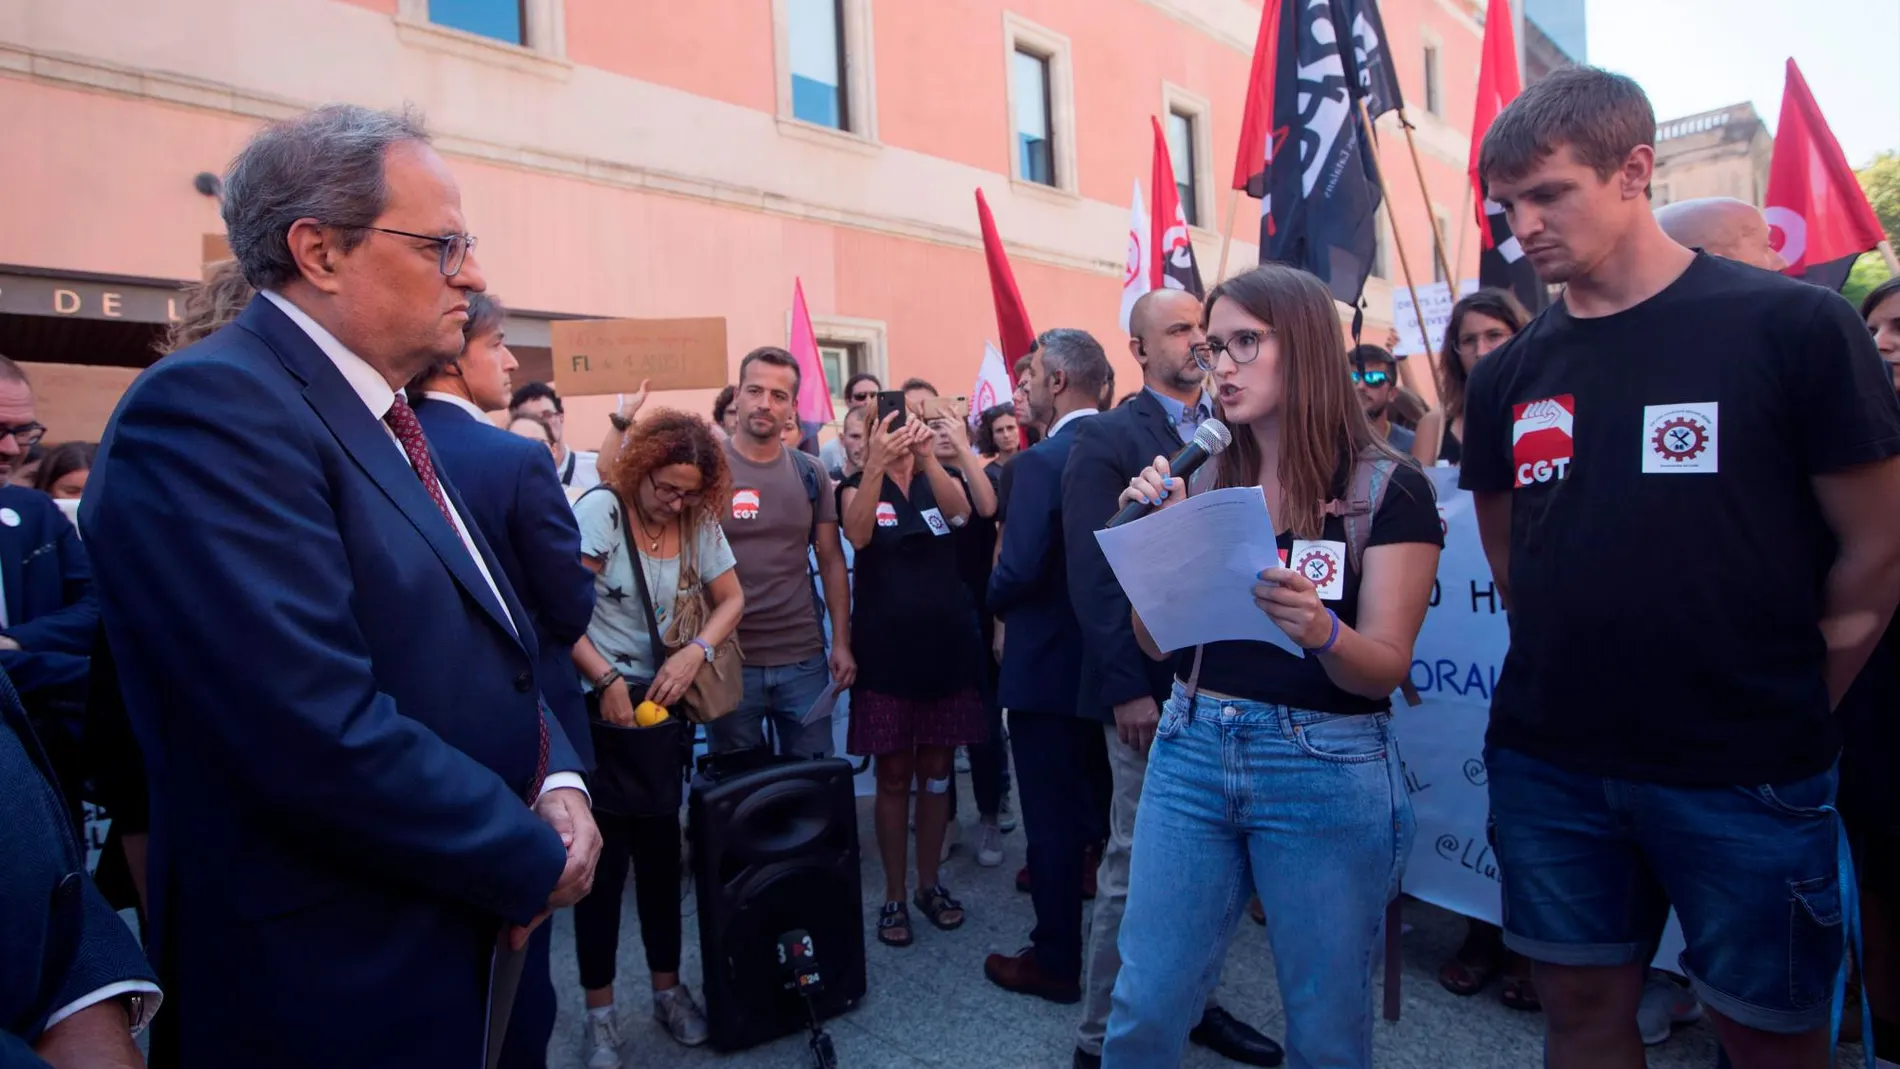 El presidente de la Generalitat, Quim Torra, escucha al colectivo de doctorandos en lucha minutos antes de presidir la inauguración oficial del curso 2019-2020 del sistema universitario catalán